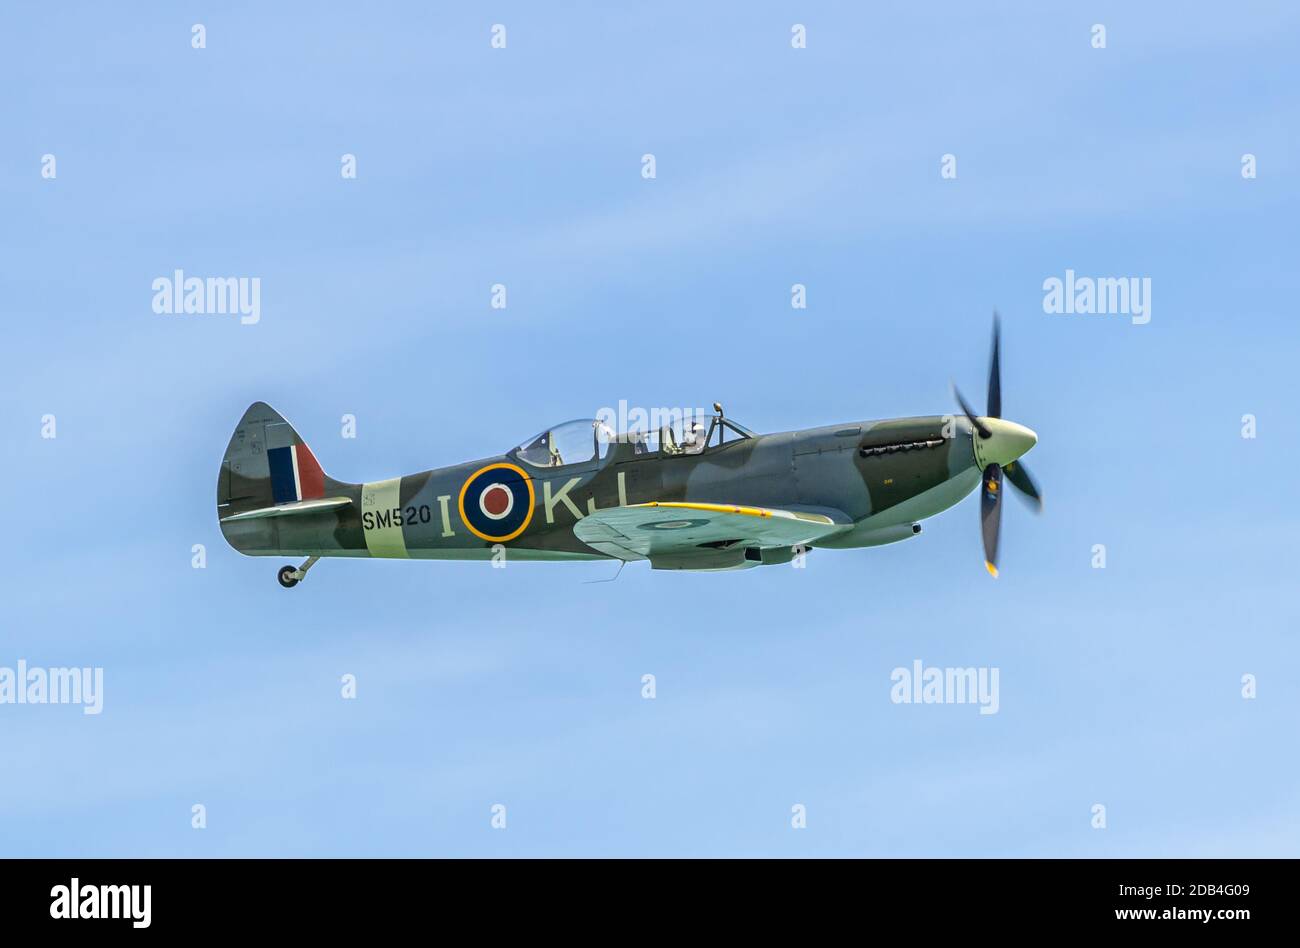 L'avion Supermarine Spitfire d'époque de la deuxième Guerre mondiale, SM520, a été mis au rebut mais restauré et converti en avion à 2 places, volant dans un étalage. Banque D'Images